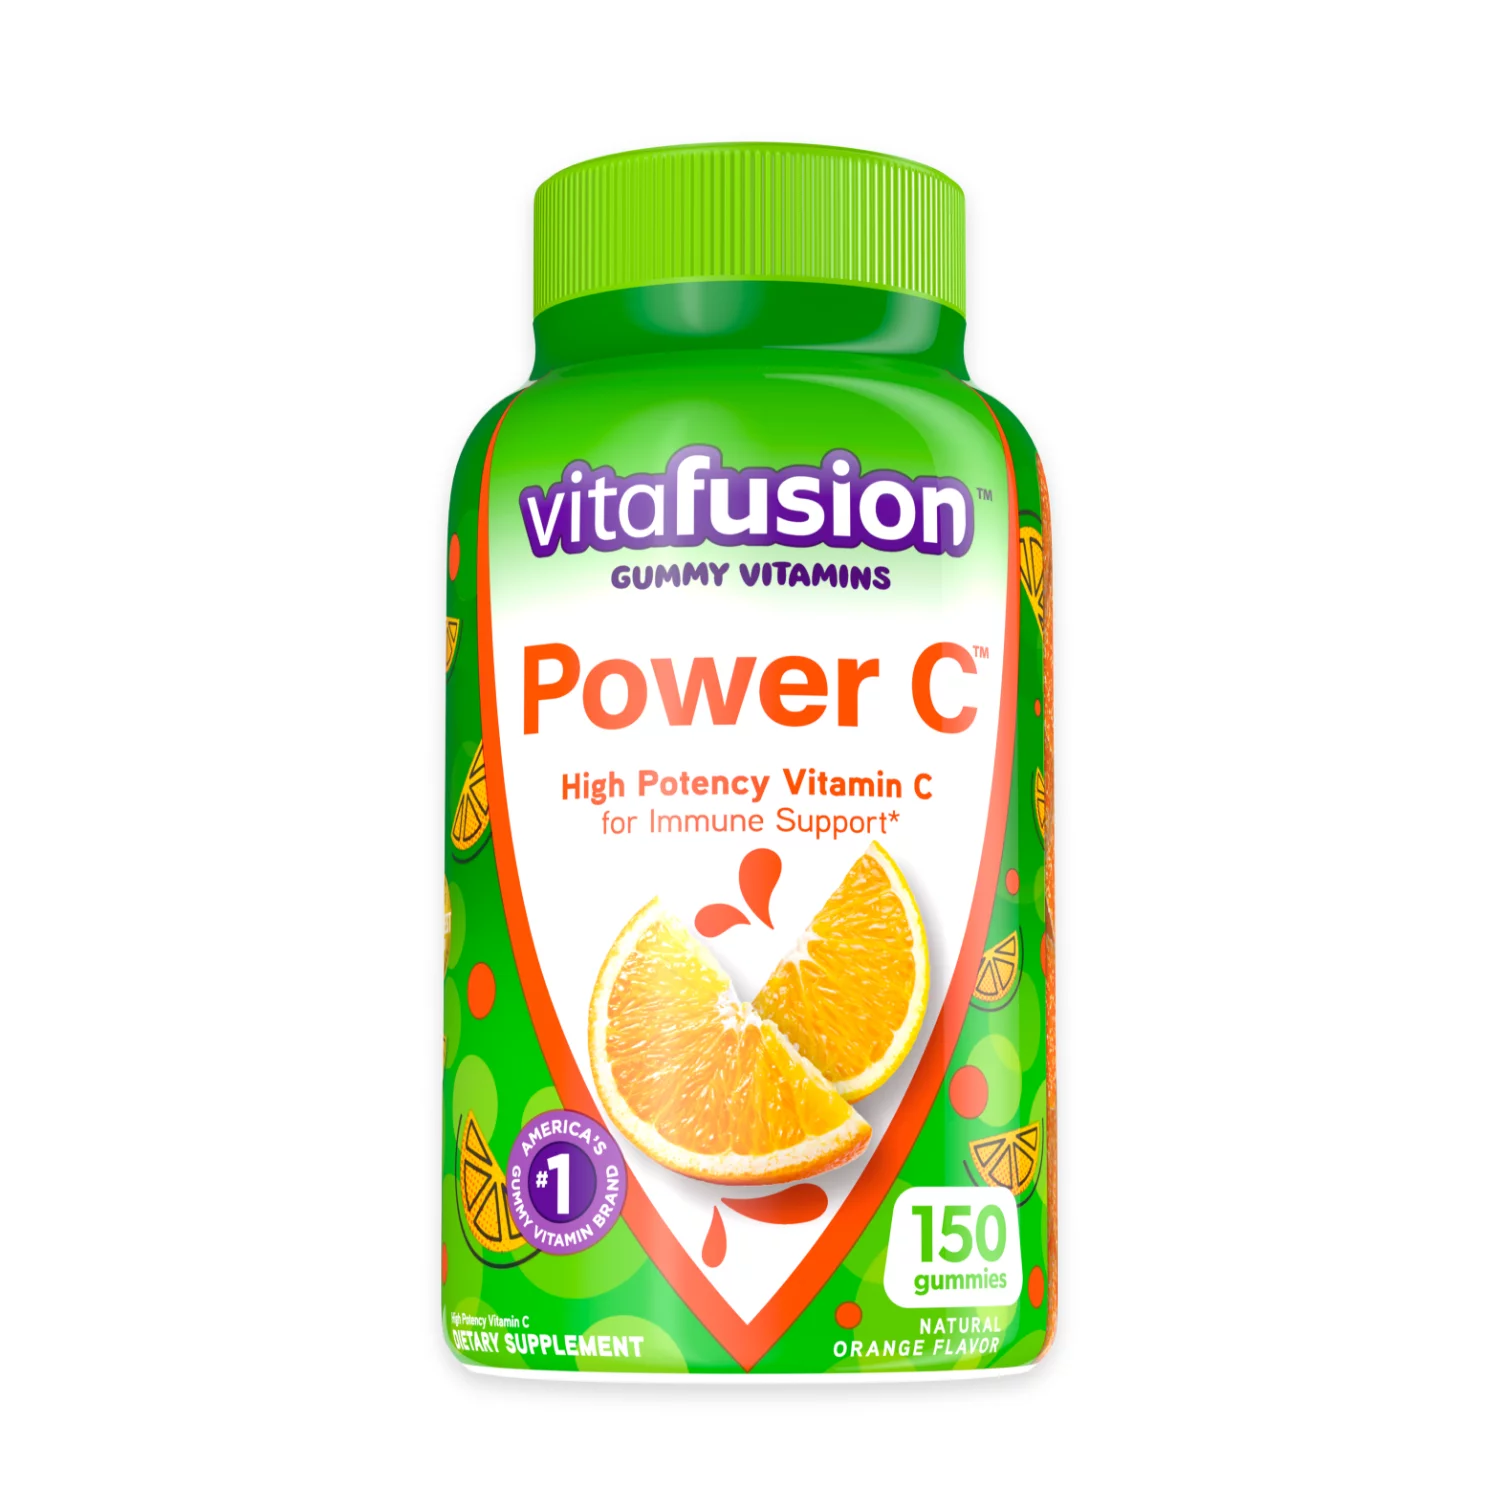 Vitafusion Power C Vitamin C Gummies for Immune Support, Orange Flavored, 150 Count